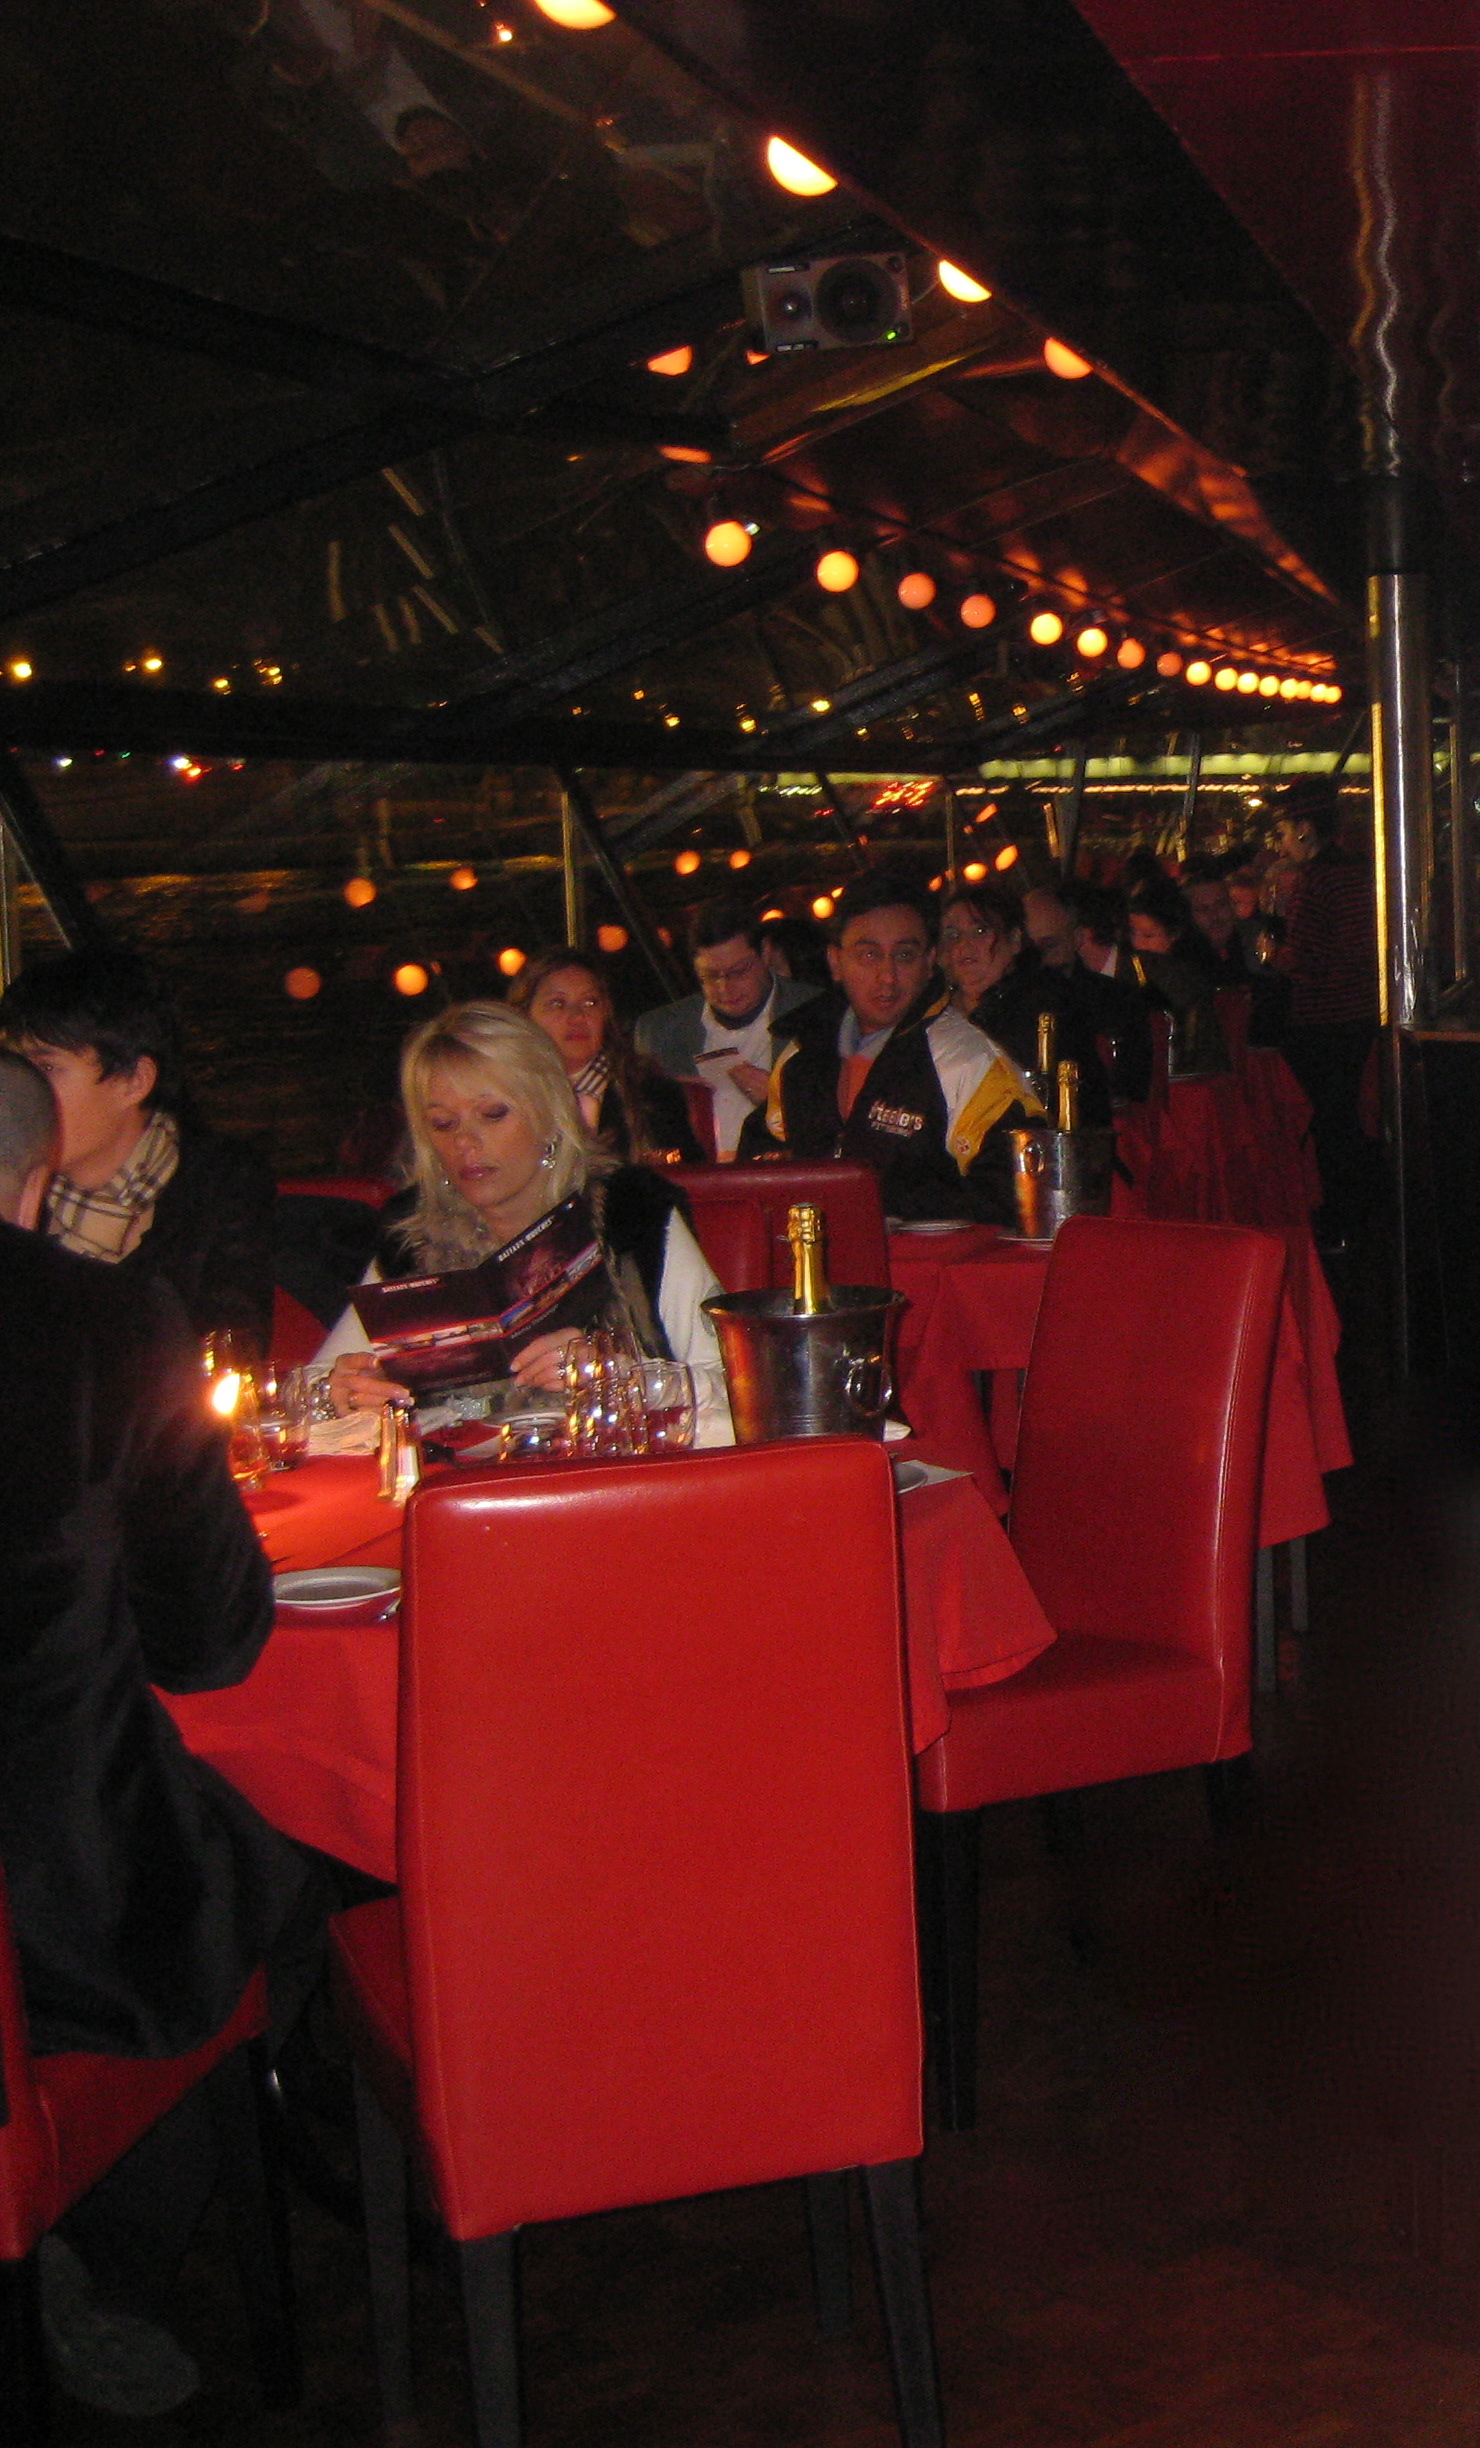 Bateau Mouche dinner cruise in Paris